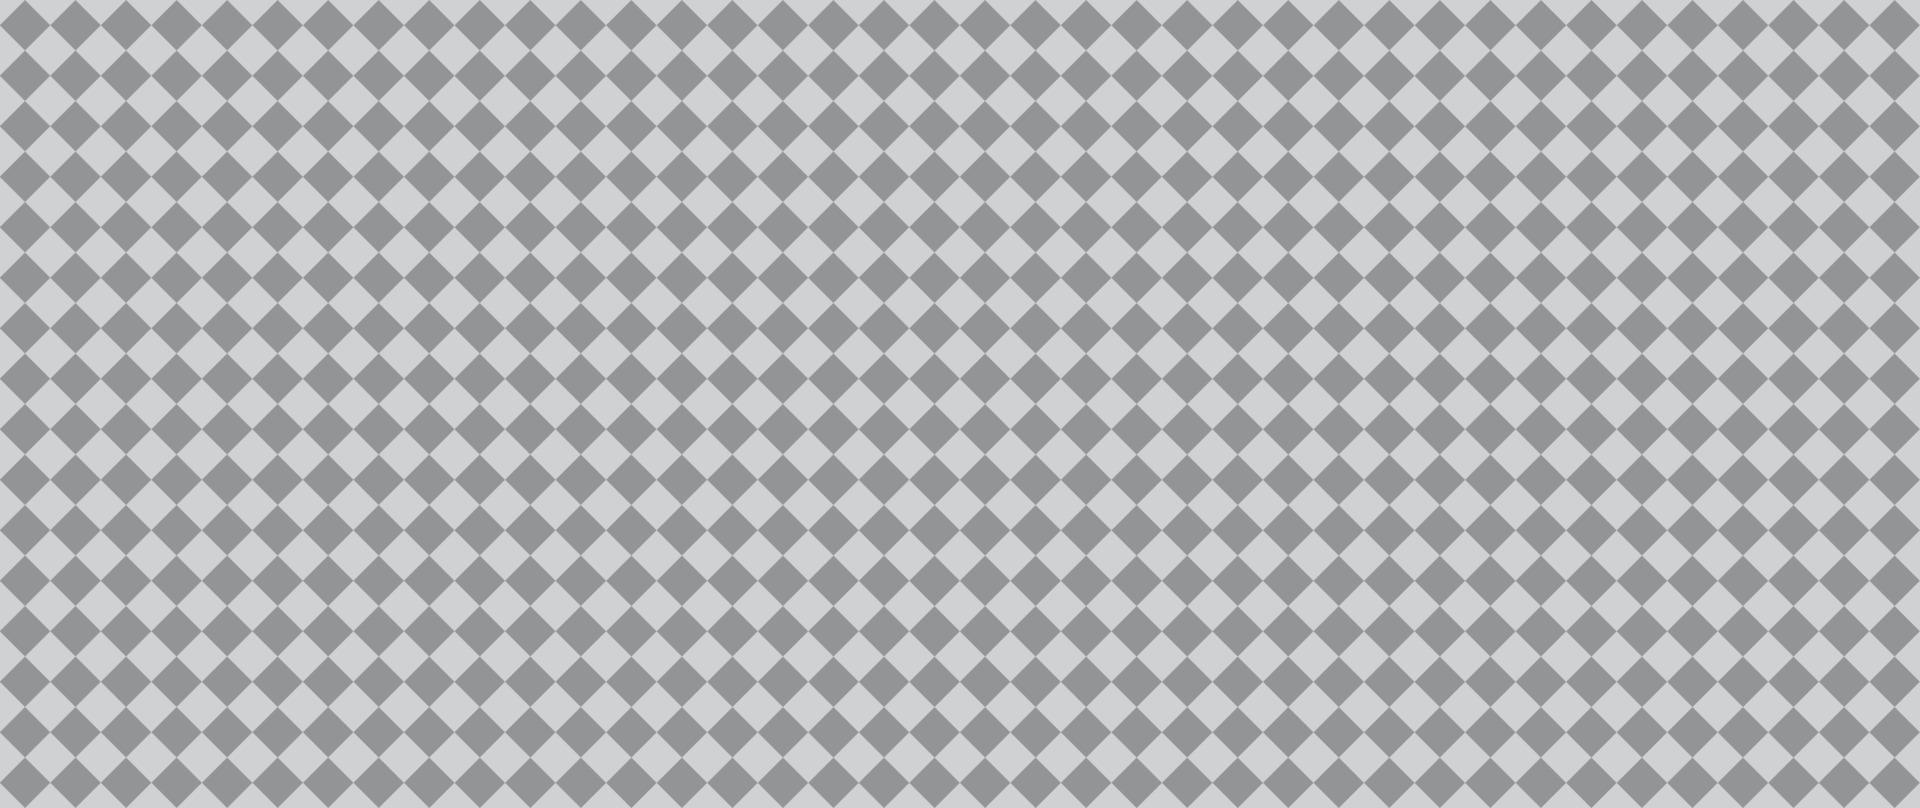 padrão sem costura de efeito de transparência de grade com quadrados cinza de malha transparente prontos para simular fundo transparente do photoshop formas geométricas simples tinta têxtil png para design vetor